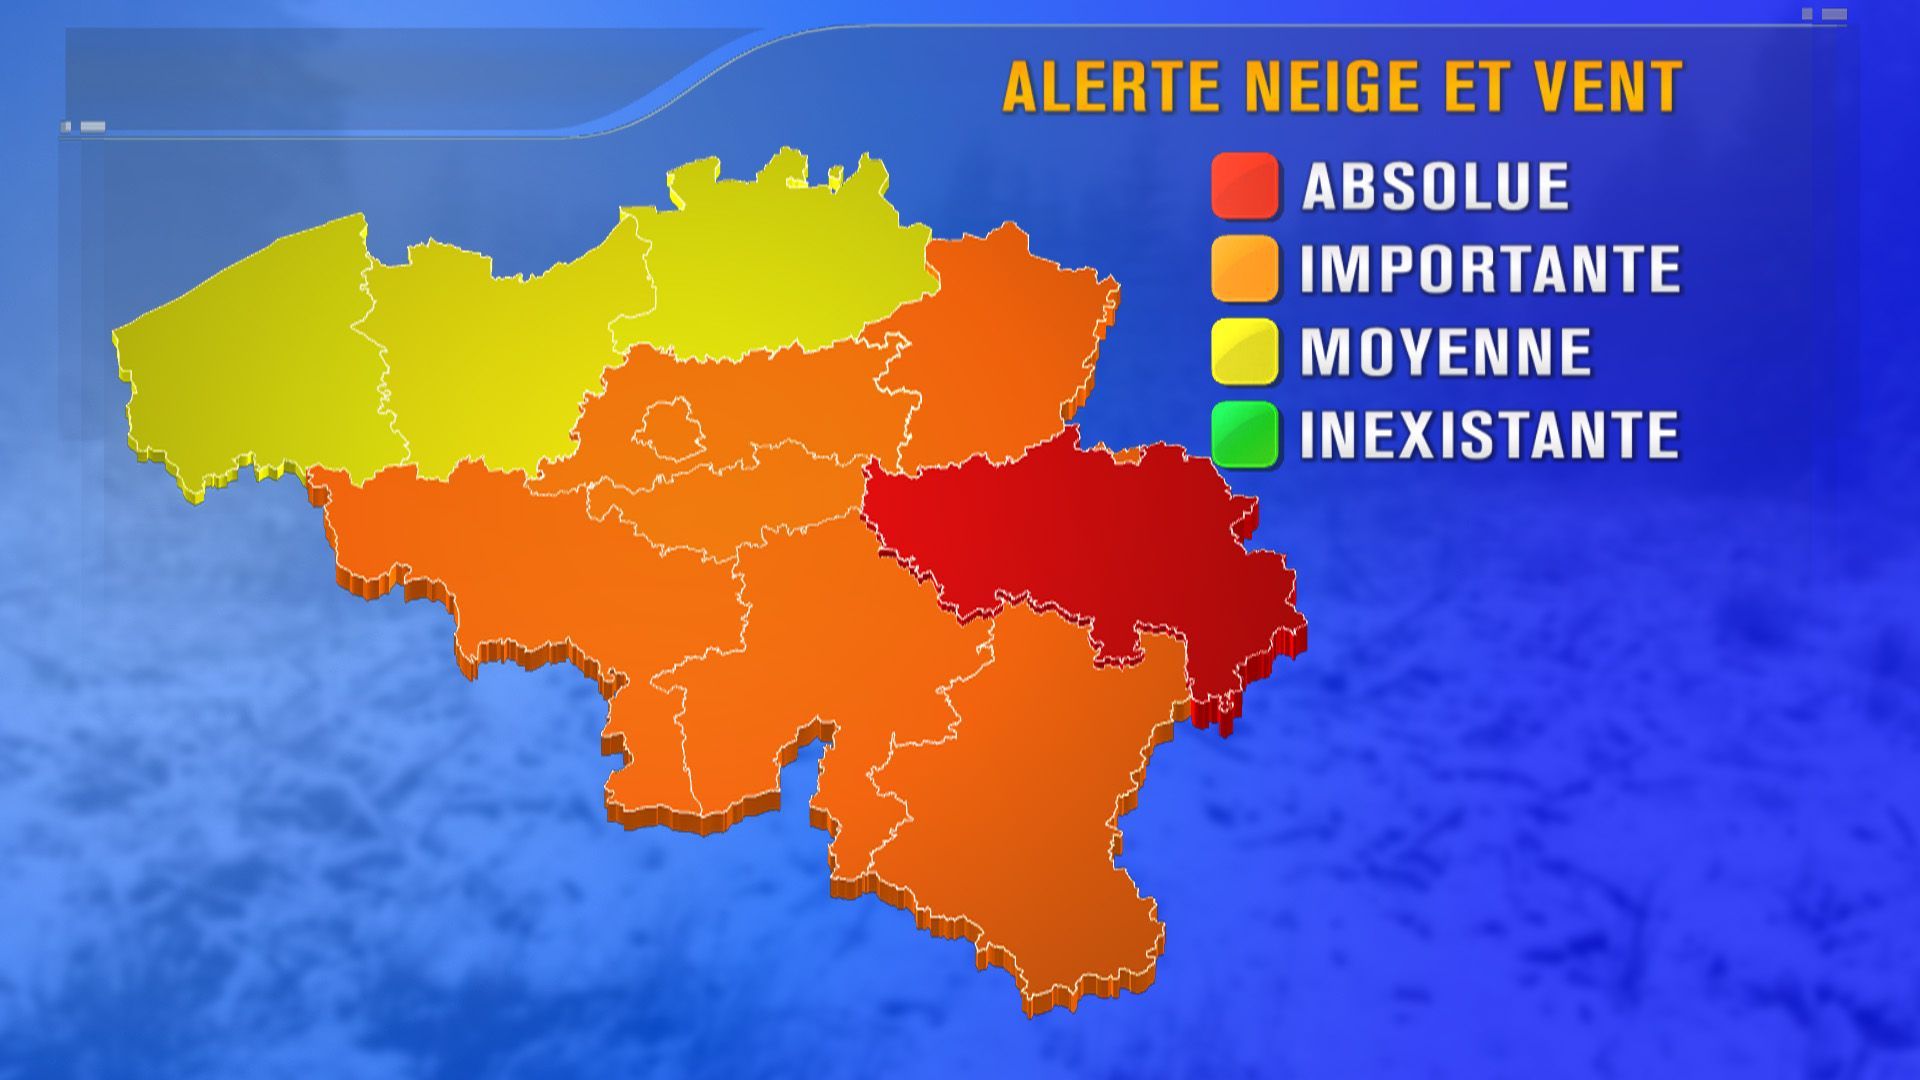 Neige et vent: alerte orange à la mer et alerte rouge sur la province de Liège